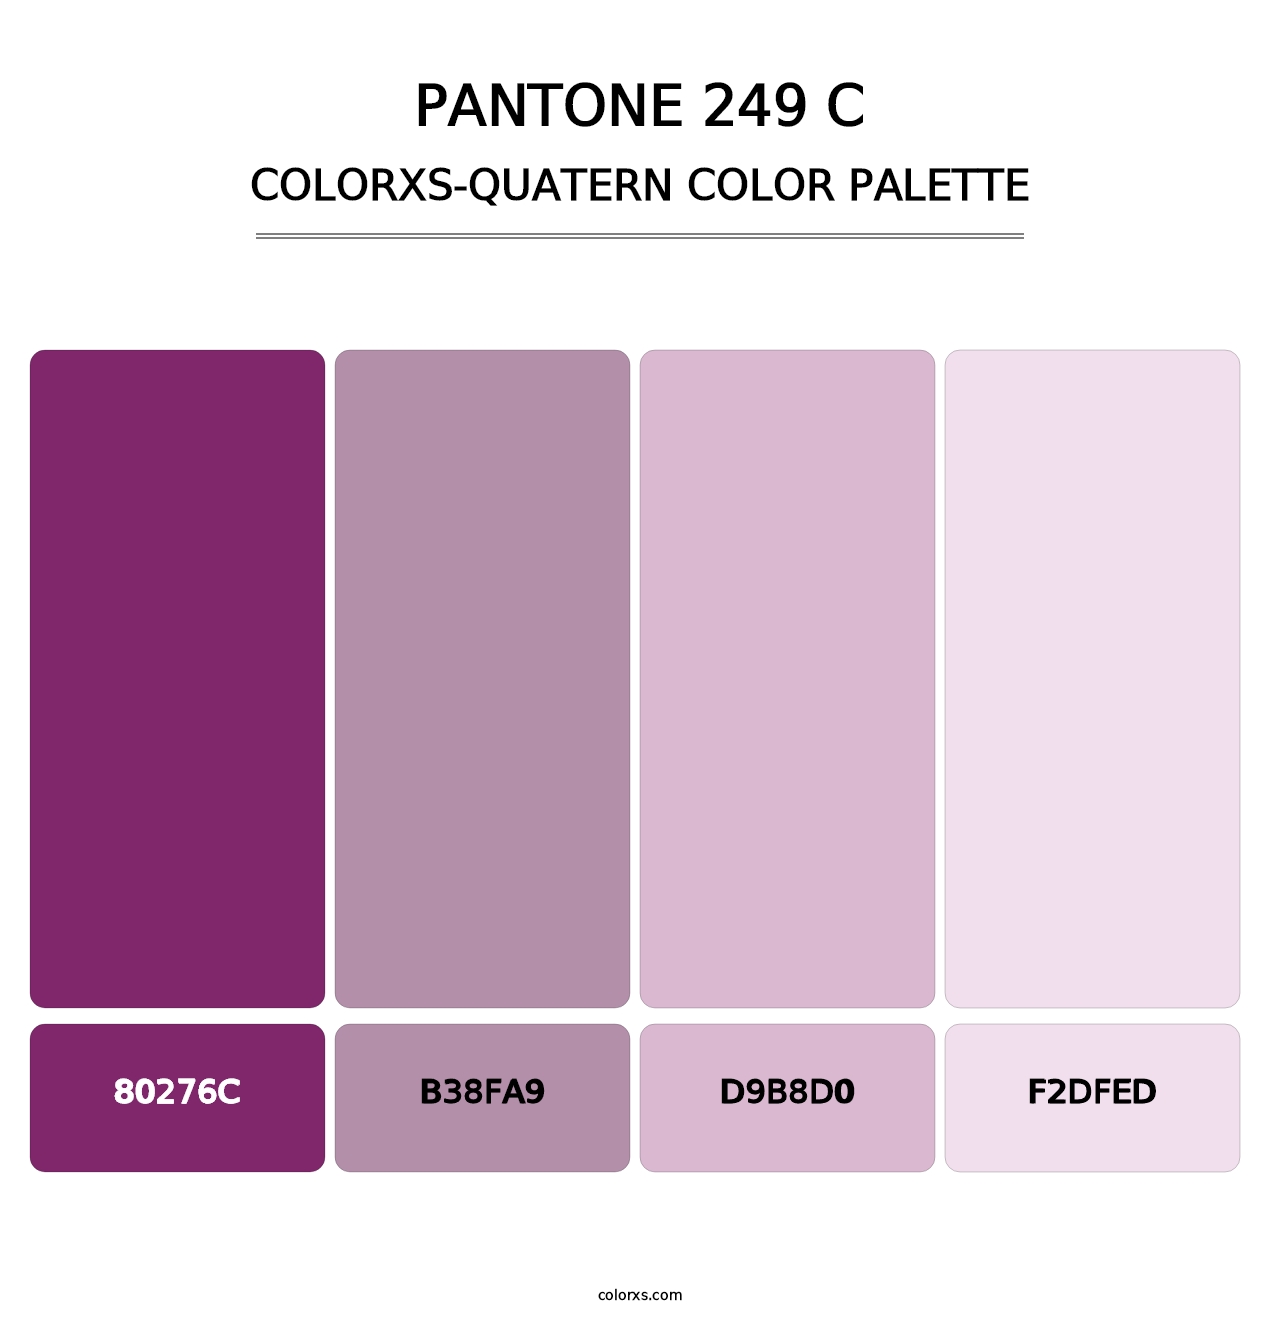 PANTONE 249 C - Colorxs Quatern Palette